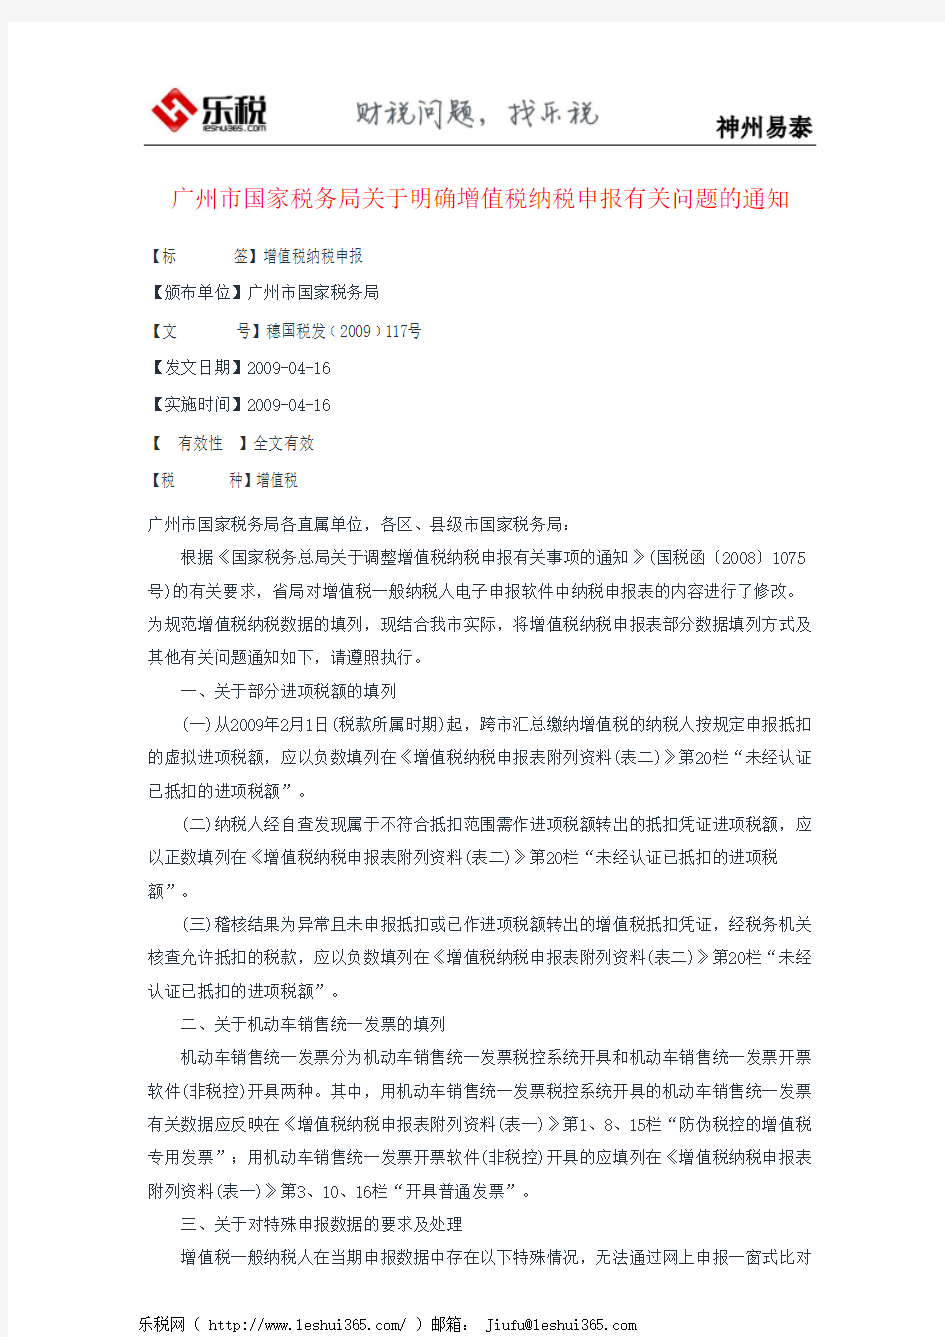 广州市国家税务局关于明确增值税纳税申报有关问题的通知